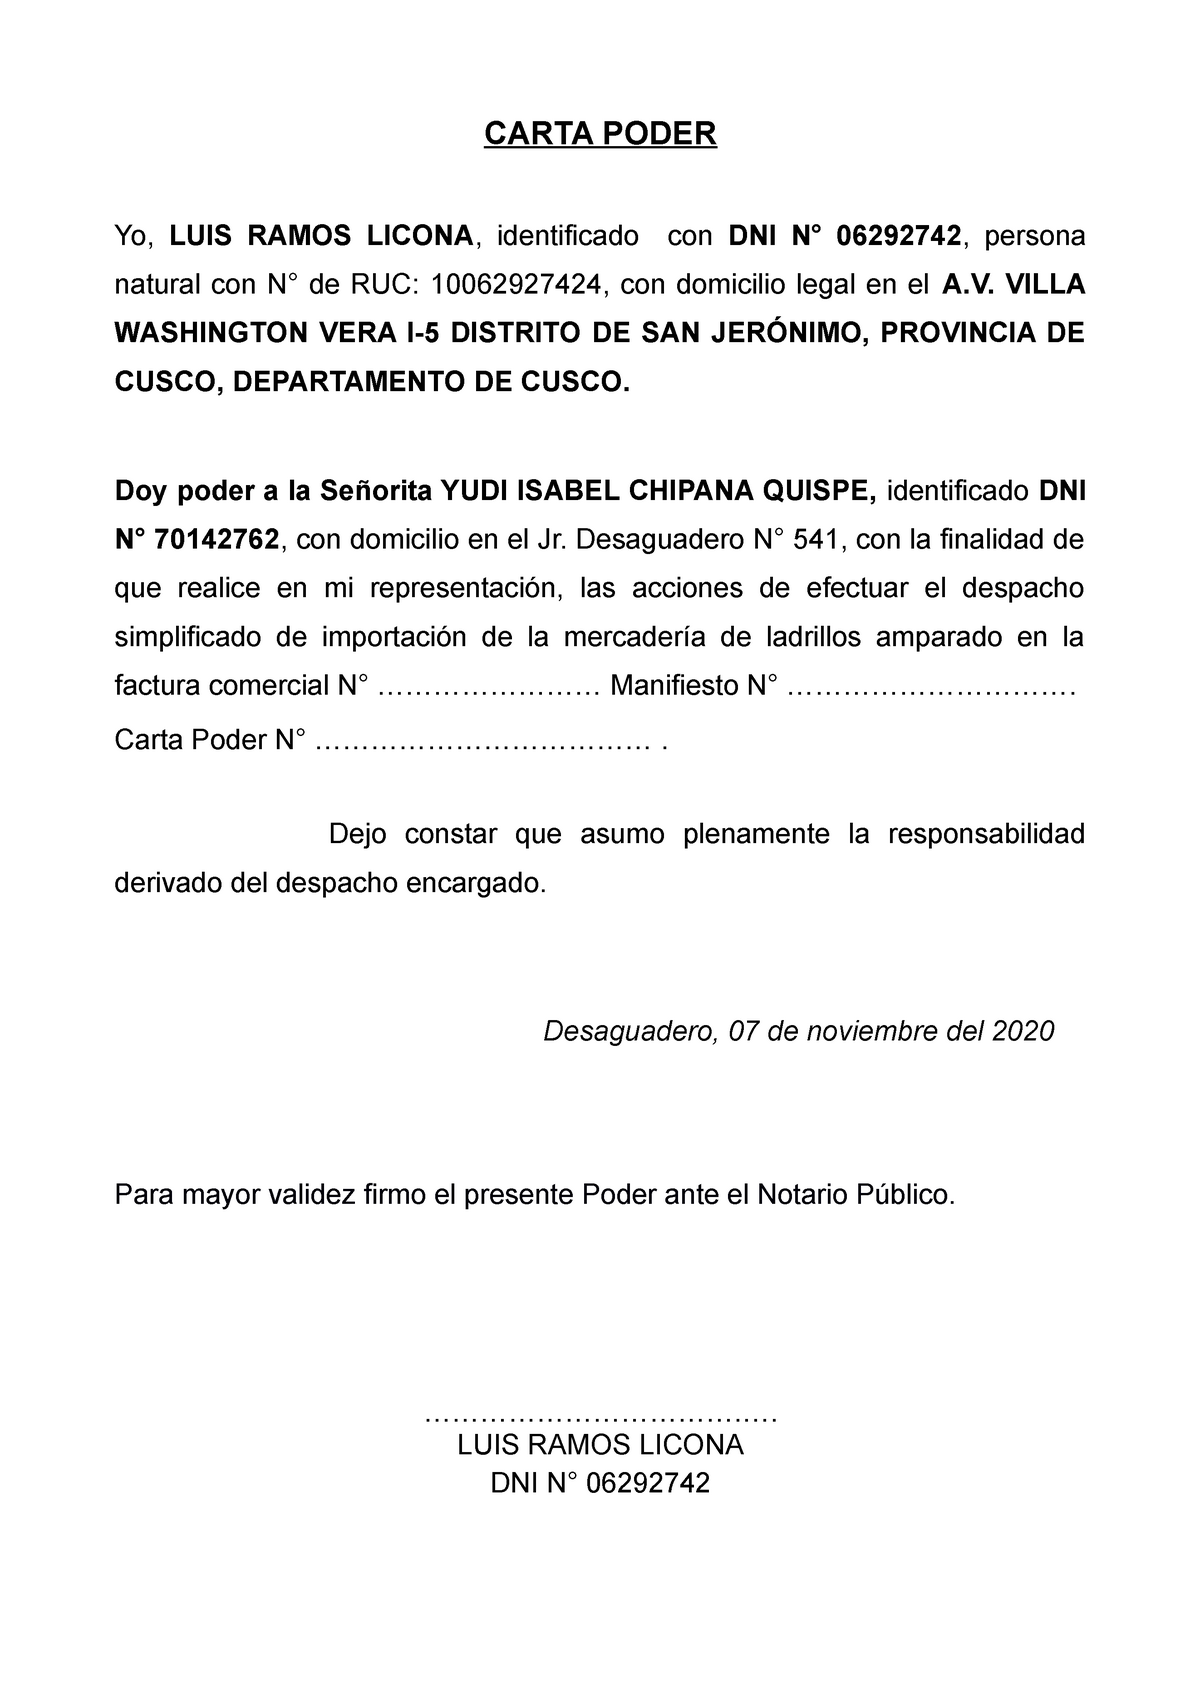 Carta Poder Apuntes 6 Carta Poder Yo Luis Ramos Licona Identificado Con Dni N° 06292742 9941